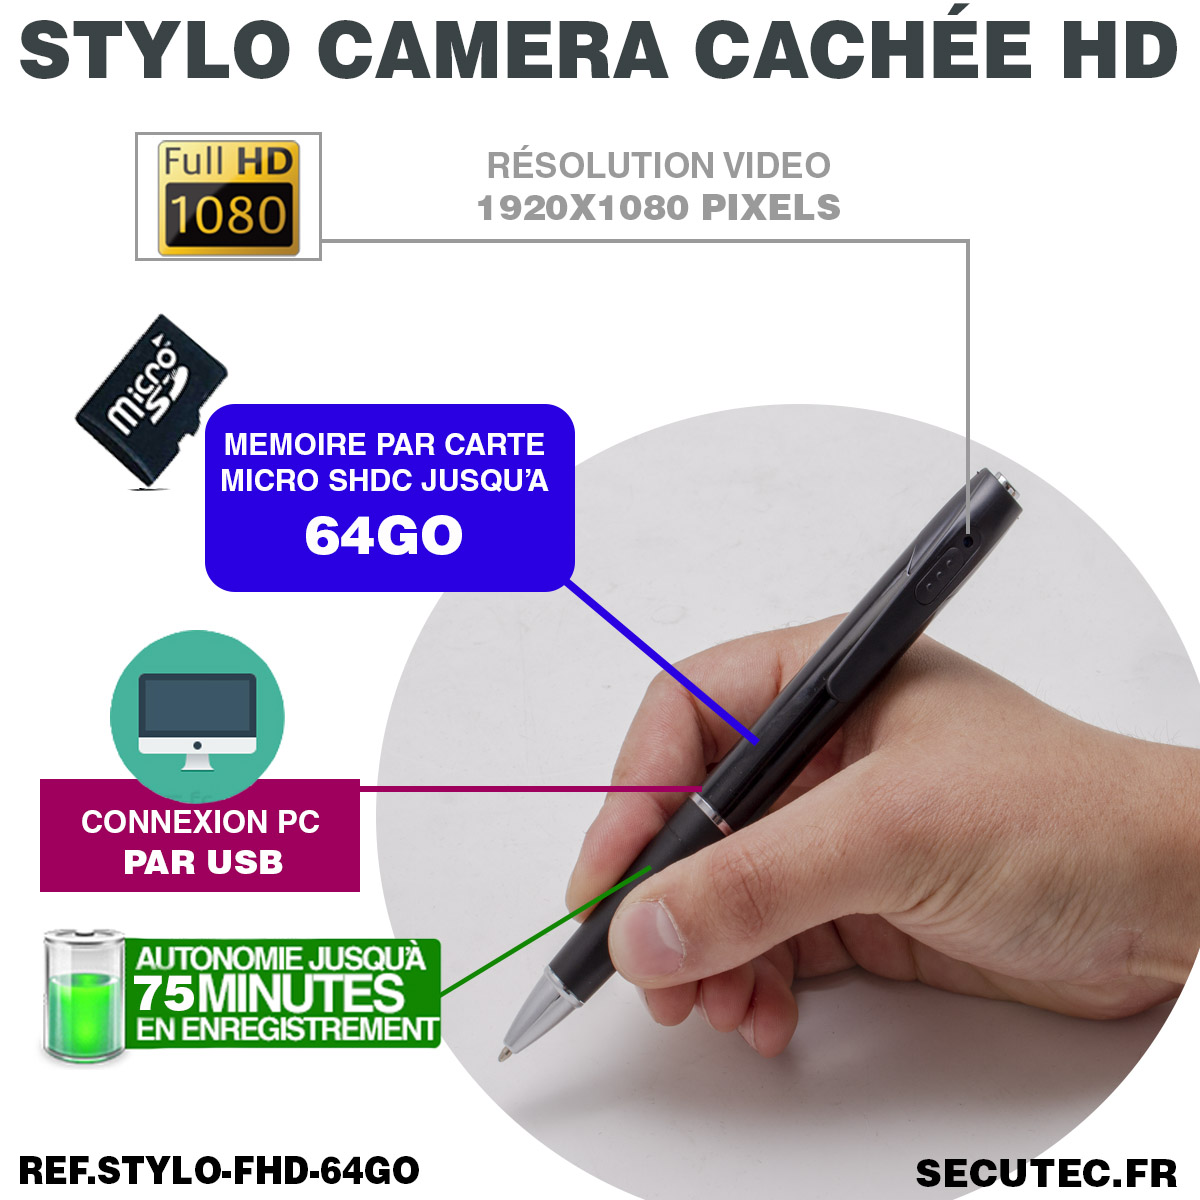 Stylo Caméra cahée - Enregistrez en totre discrétion - Mbote Shop